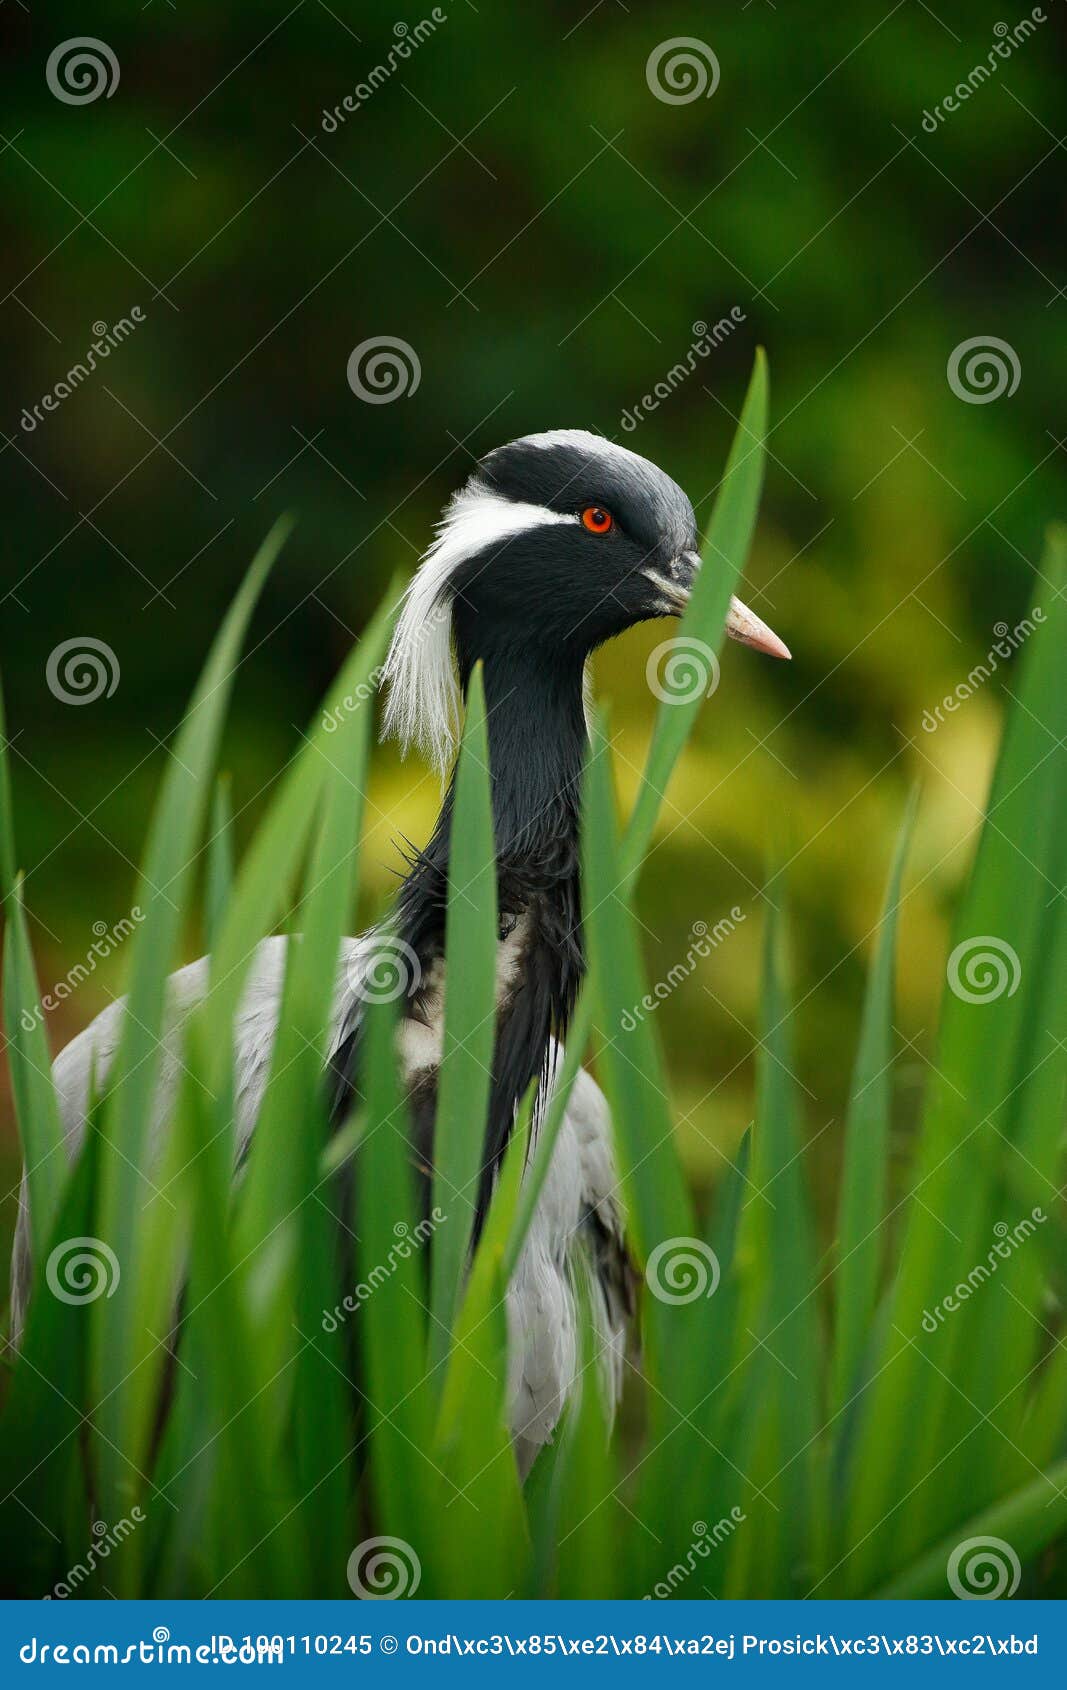 demoiselle crane, anthropoides virgo, bird hiden in grass near the water. detail portrait of beautiful crane. bird in green nature